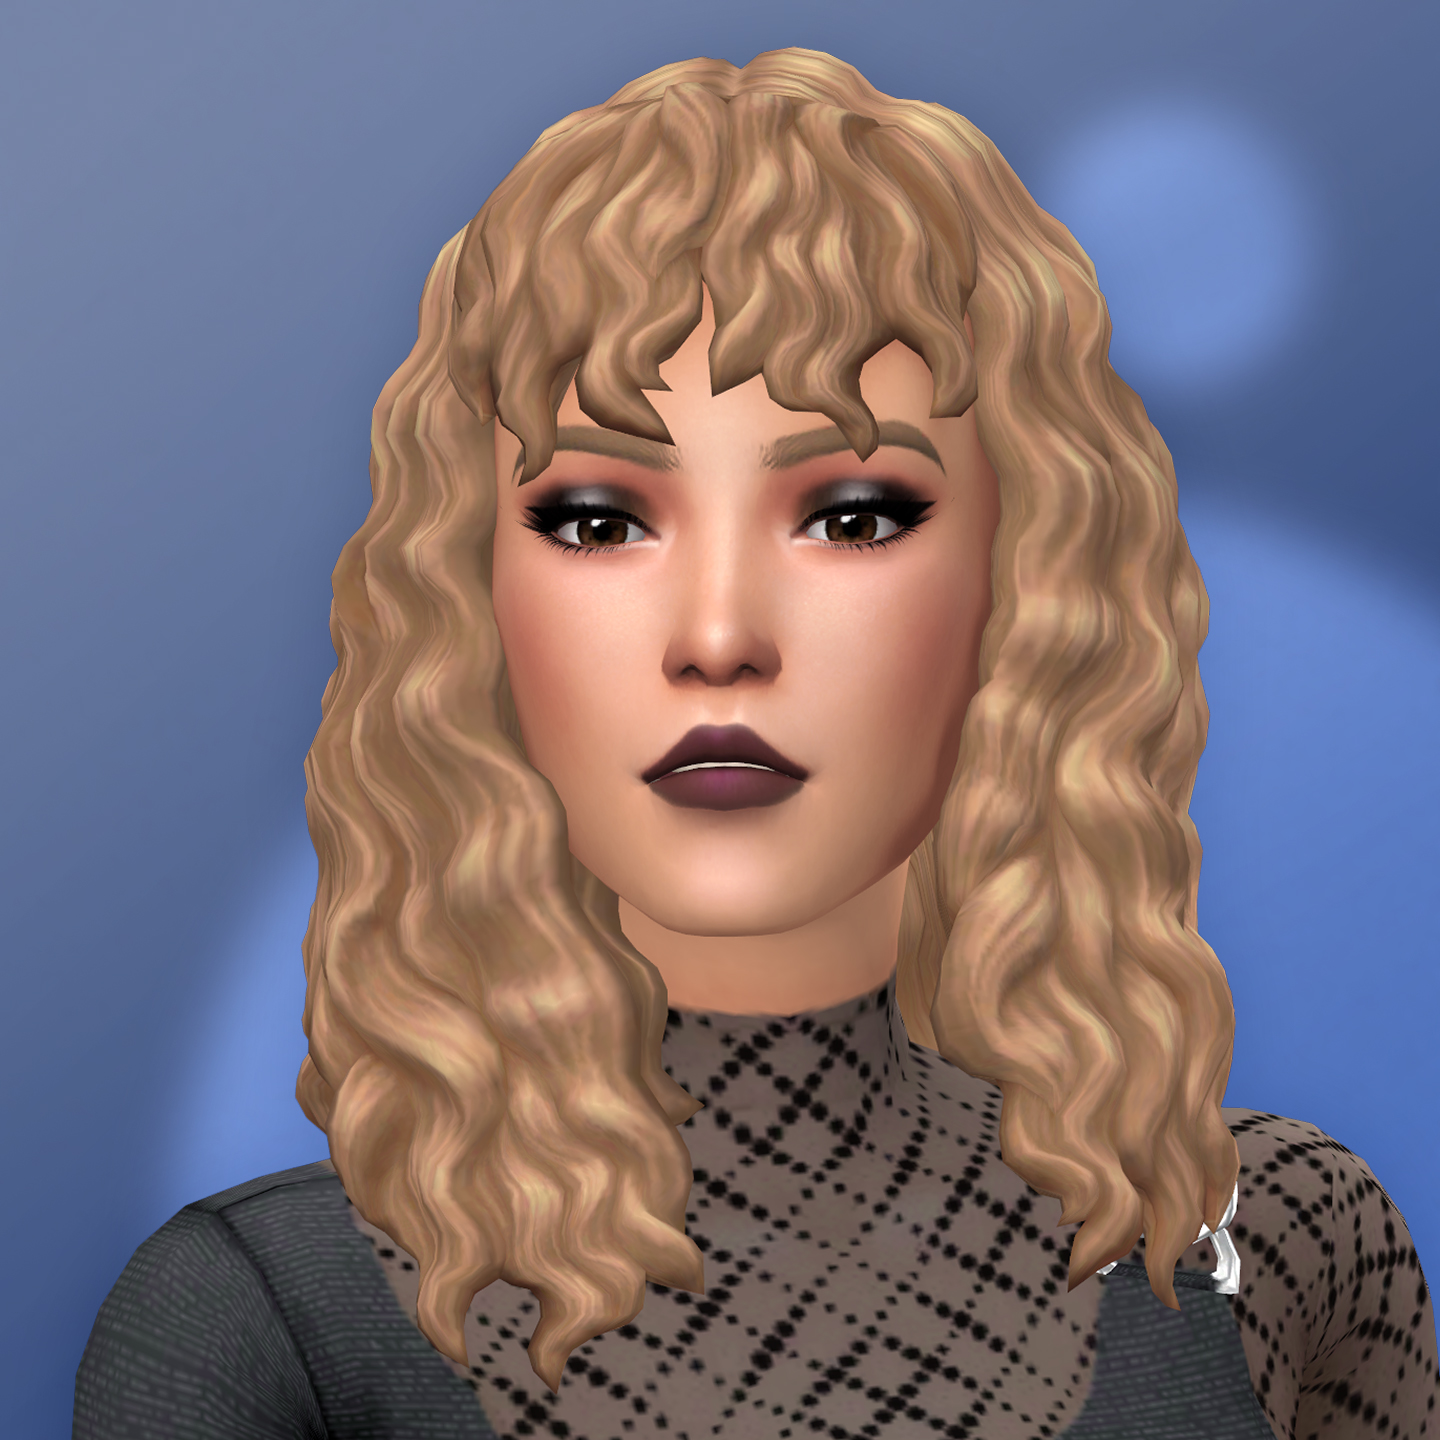 QICC - Nisma Hair - The Sims 4 Create a Sim - CurseForge